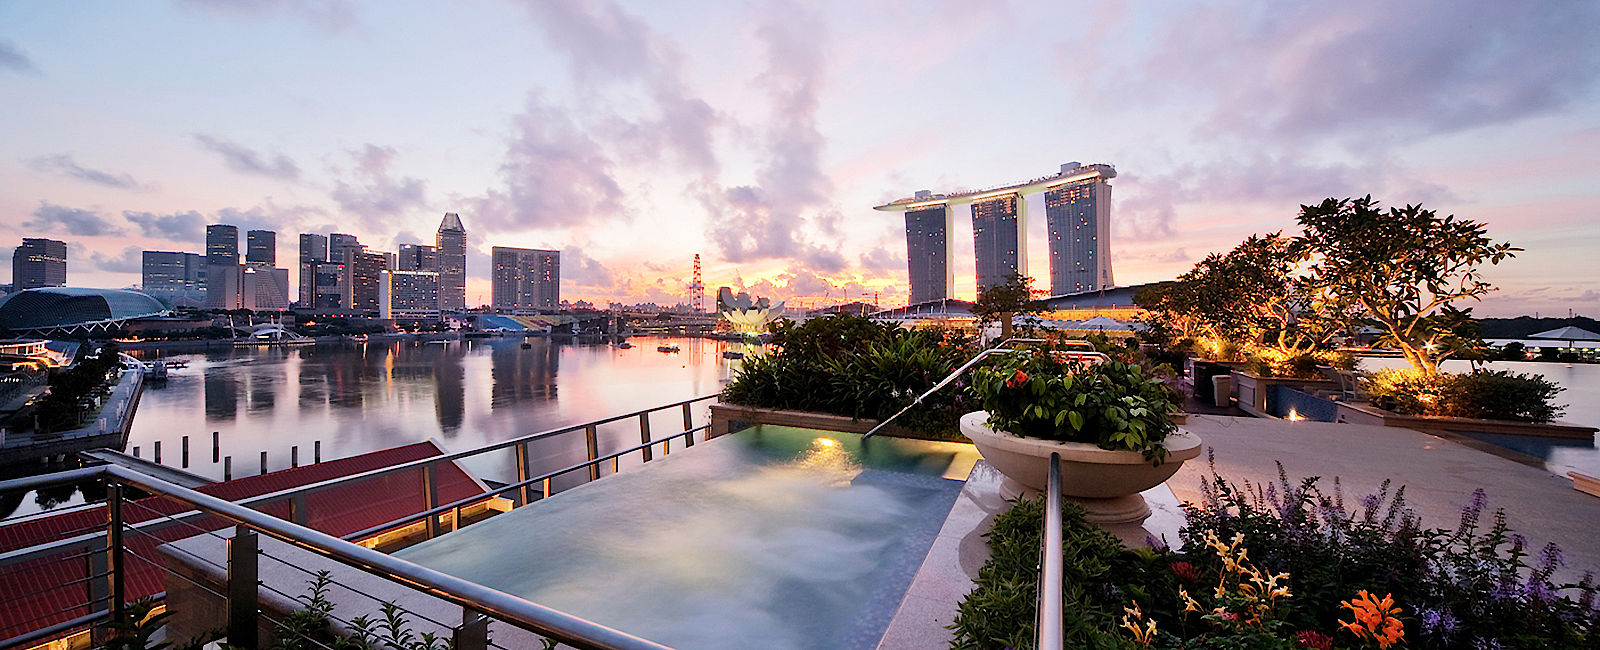 HOTEL TIPPS
 The Fullerton Bay Hotel 
 Imposantes Luxus Hotel im Herzen von Singapur 